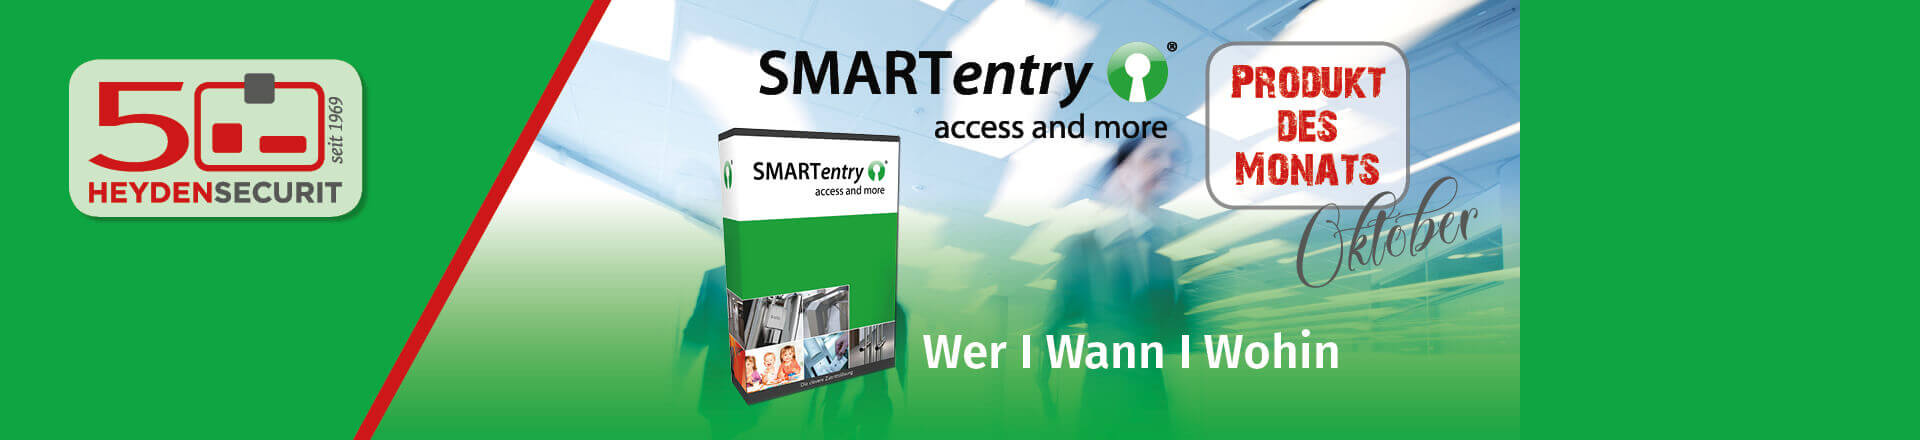 Unser Produkt des Monats ist die Zutrittssoftware SmartEntry.